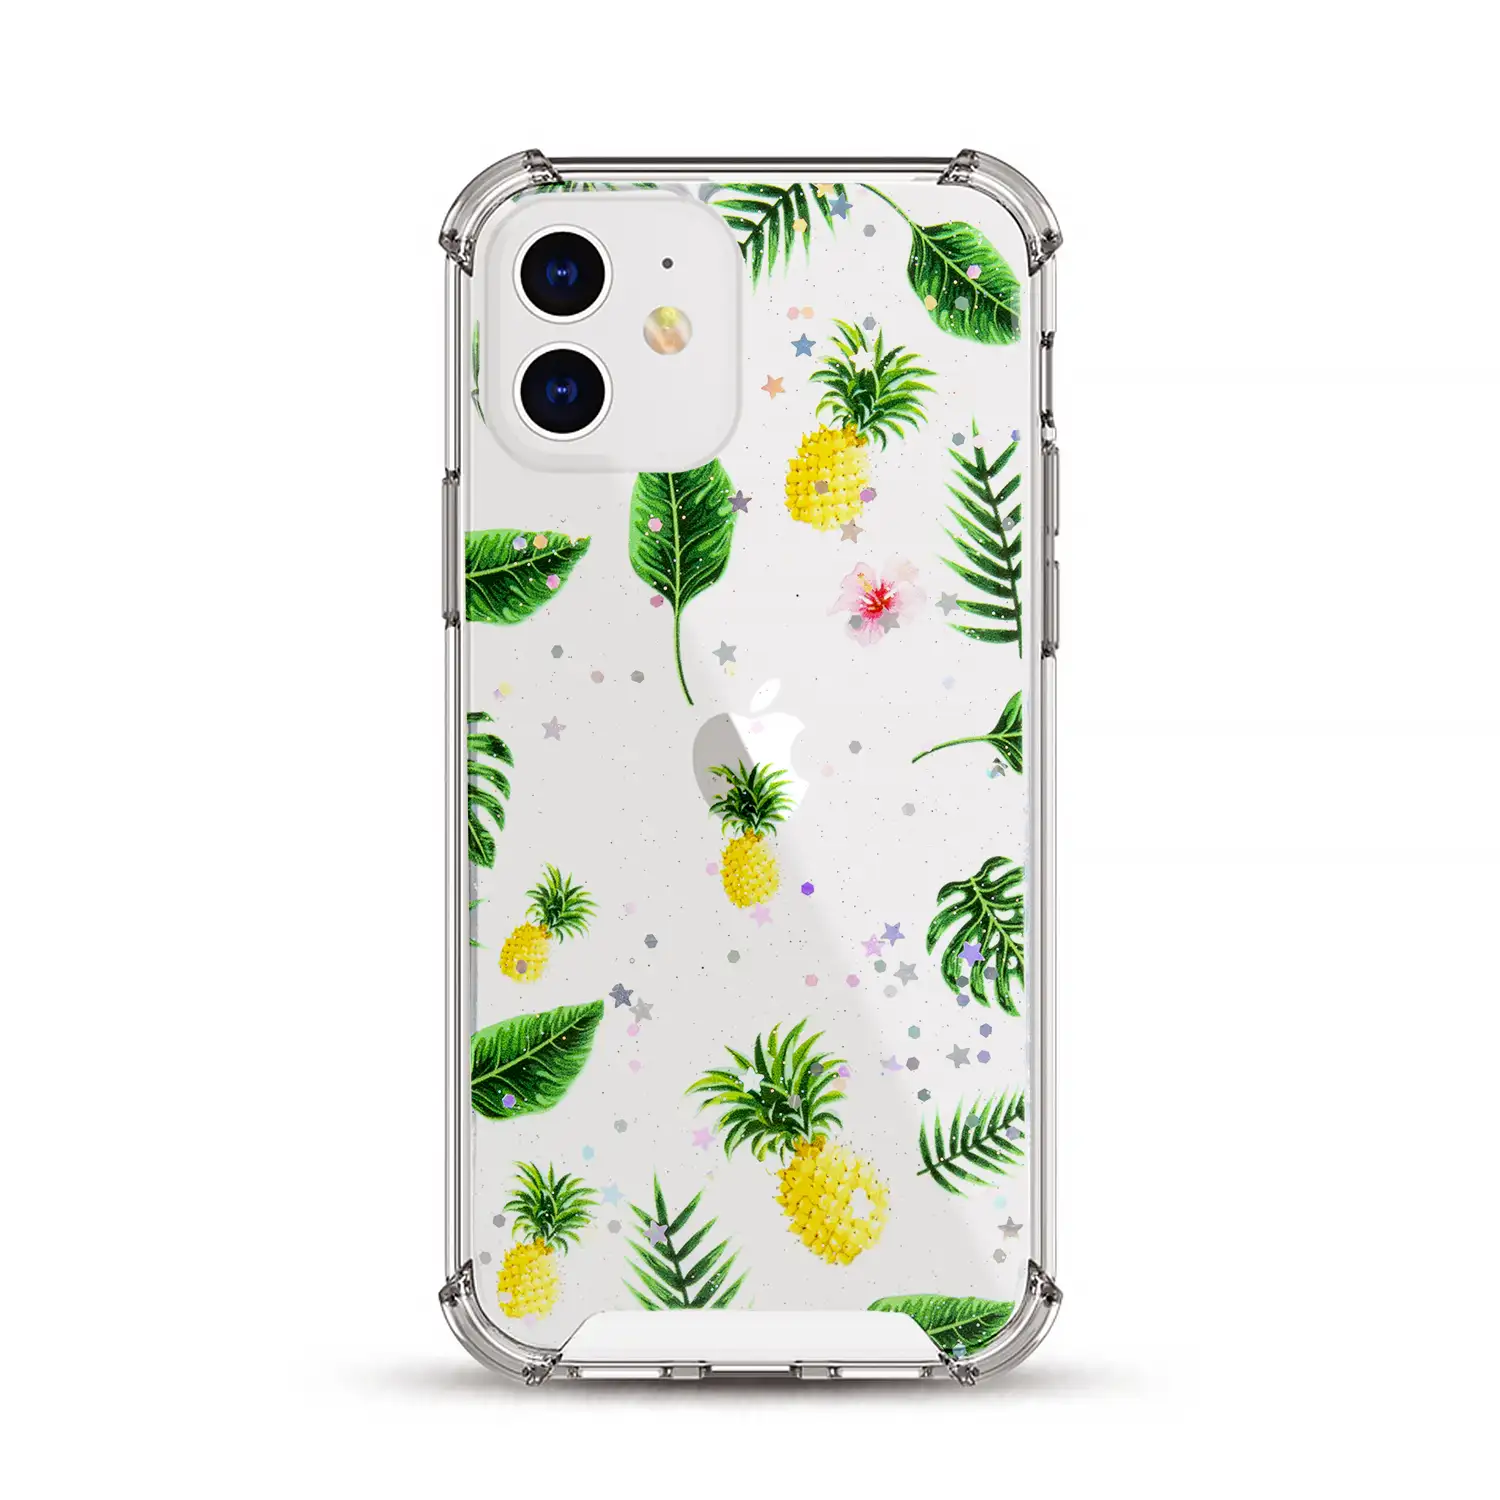 Carcasa de TPU de alta protección con diseño tropical para iPhone